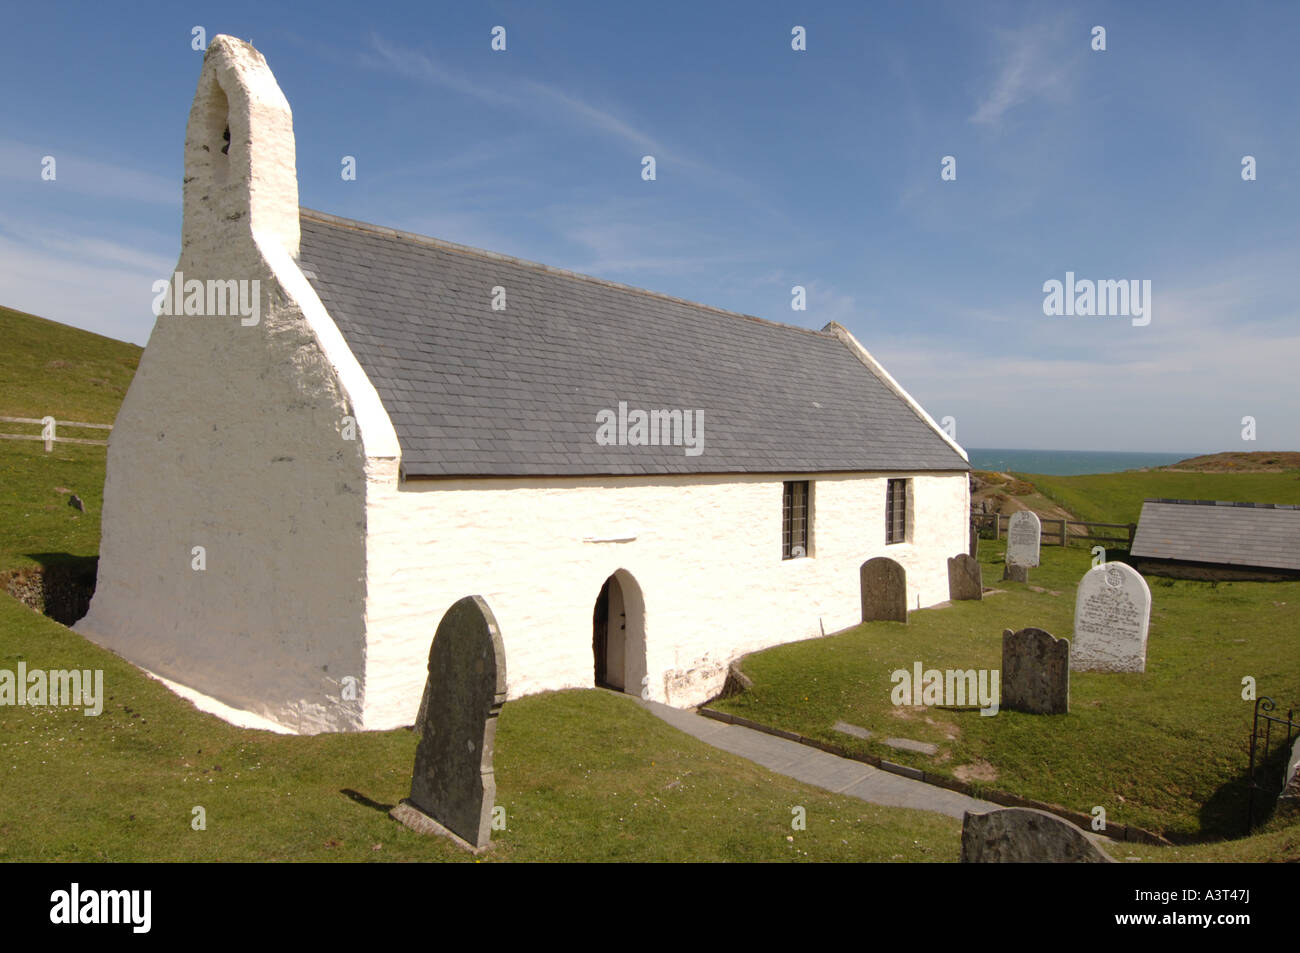 Petite chapelle à Mwnt sur la côte près de la baie de Cardigan au Pays de Galles Ceredigion Cardigan UK Banque D'Images